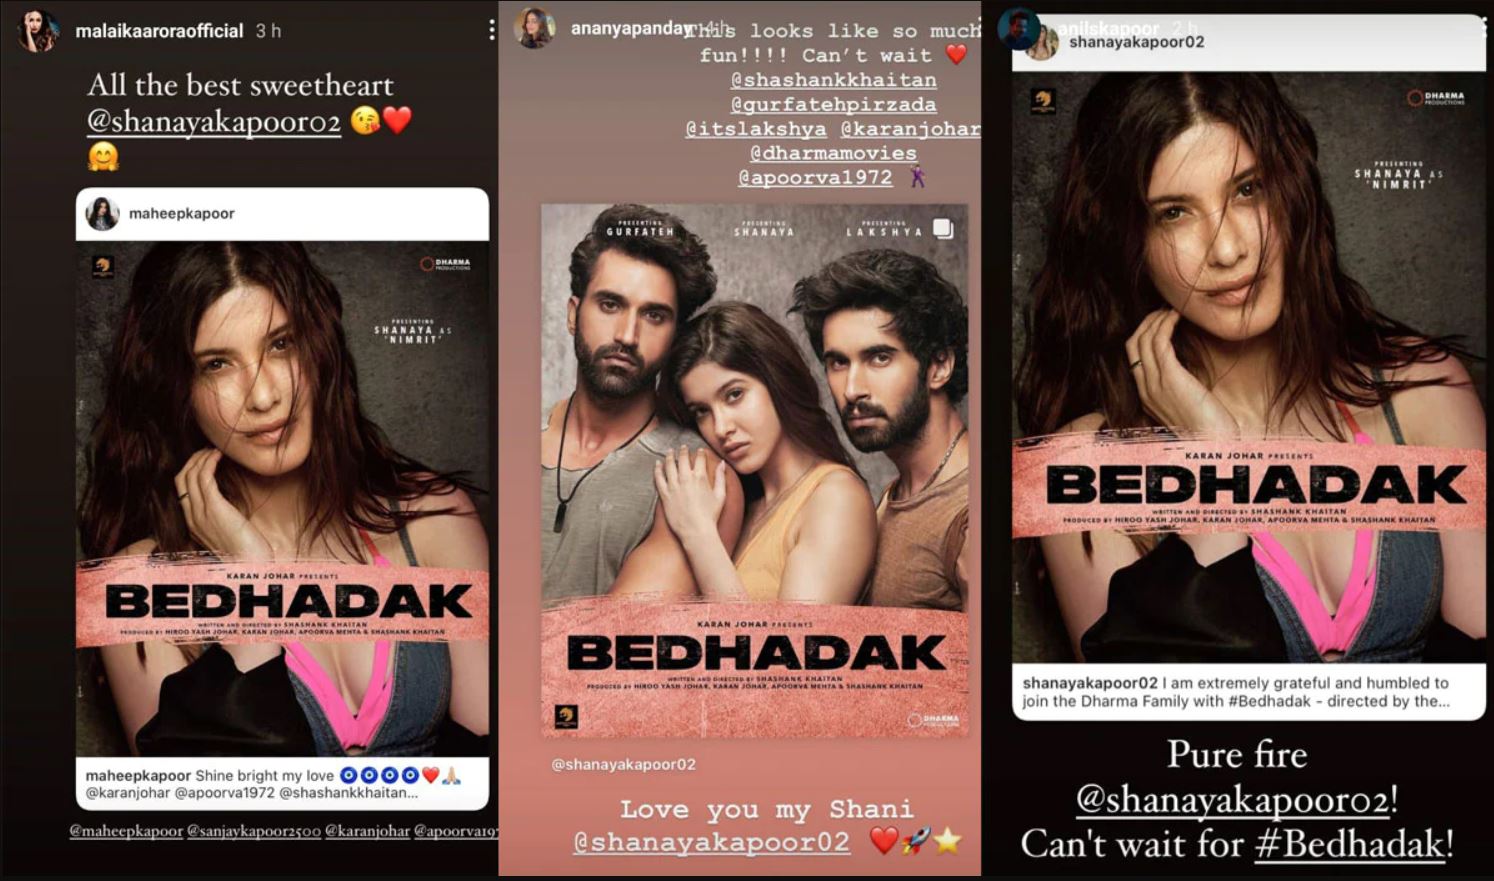 Suhana Khan, Arjun Kapoor & more Bollywood clan react to Shanya Kapoor's debut film Bedhadak  